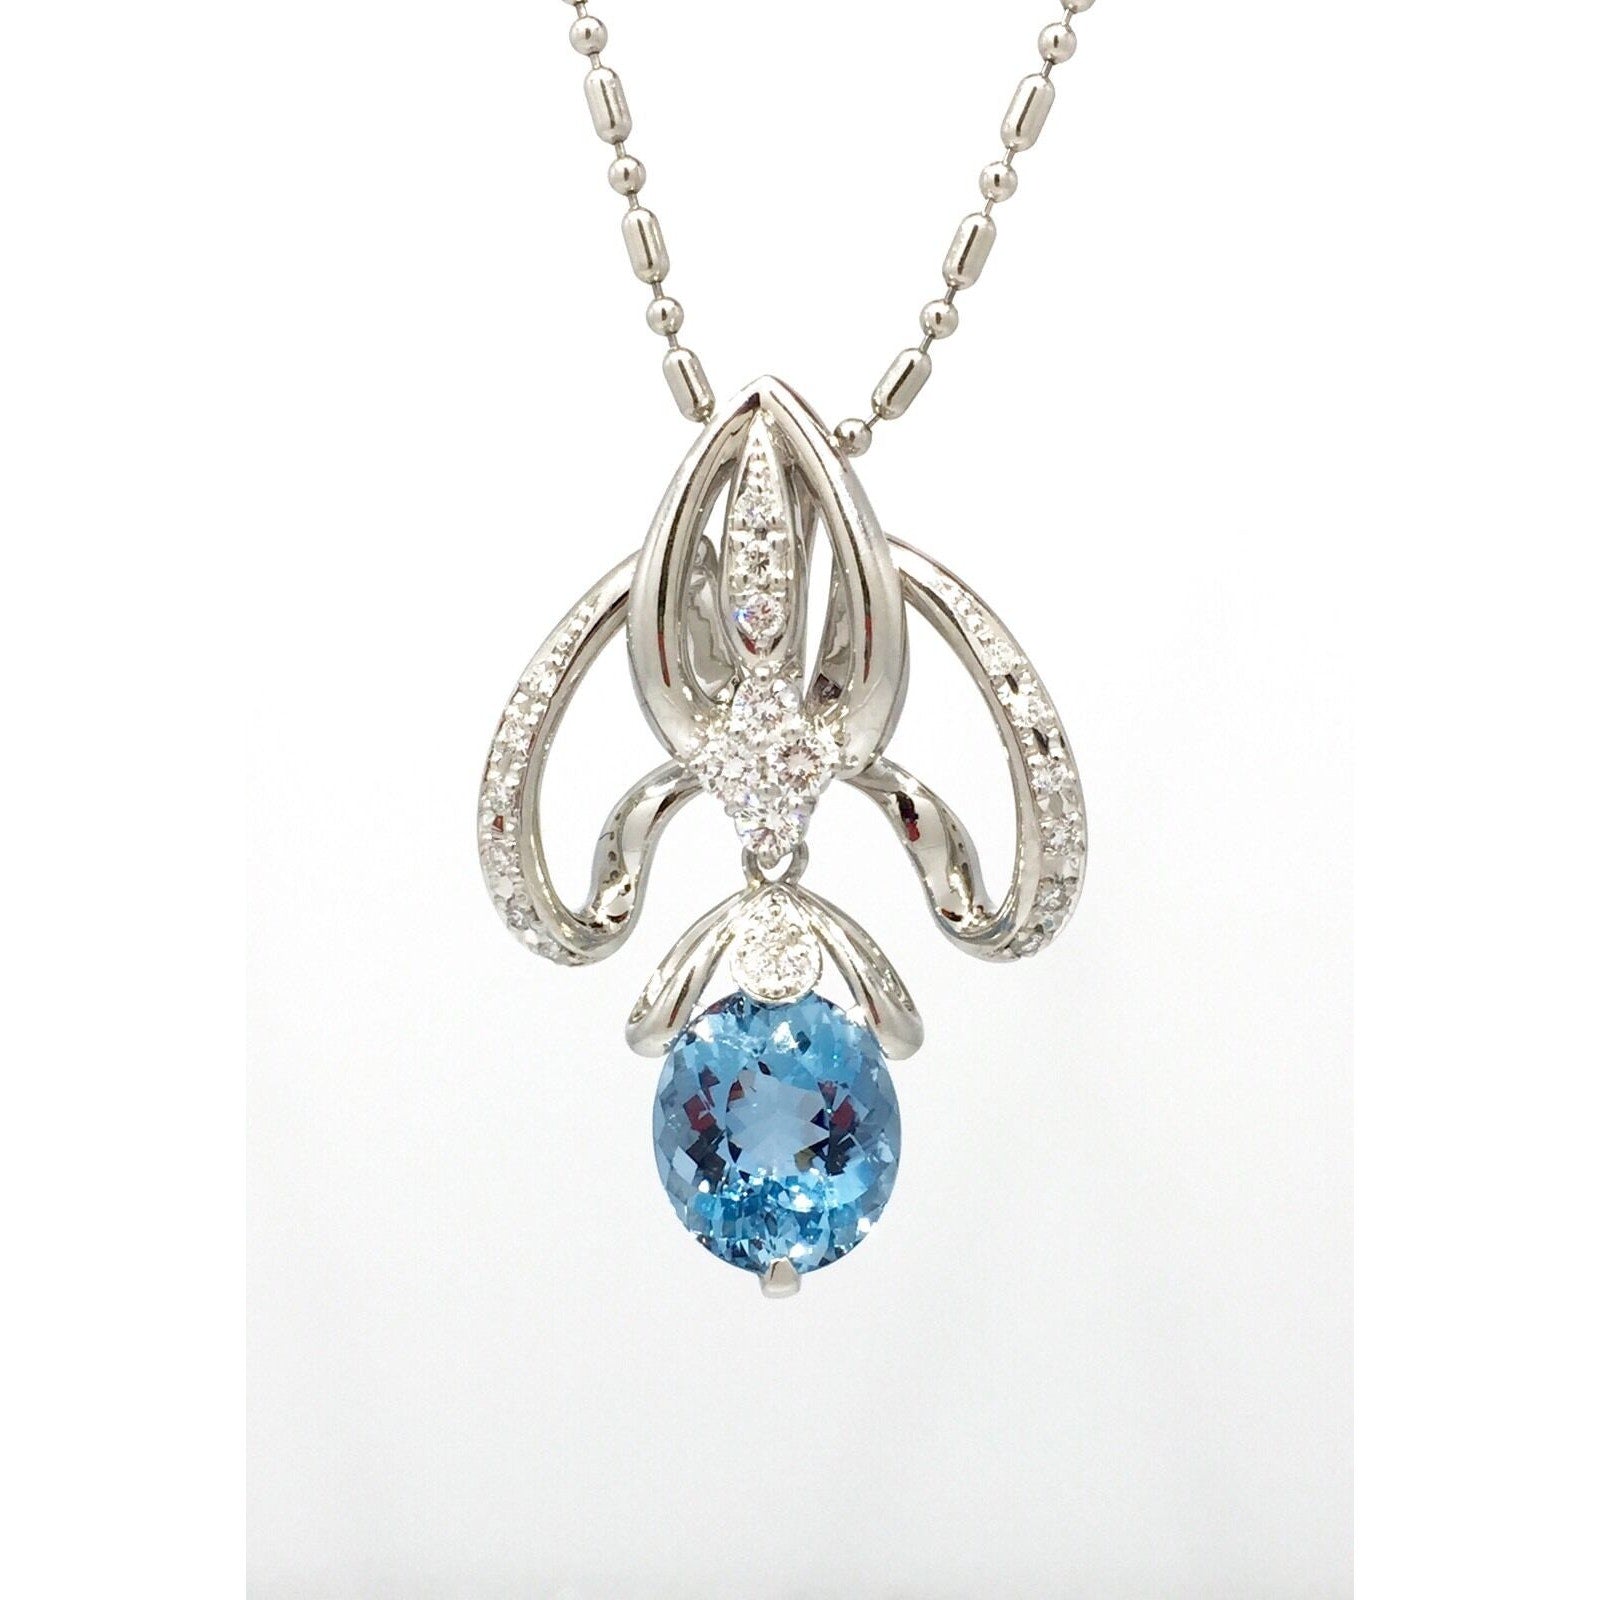 Oval Aquamarine and Diamond Pendant Necklace 24 inch in Platinum